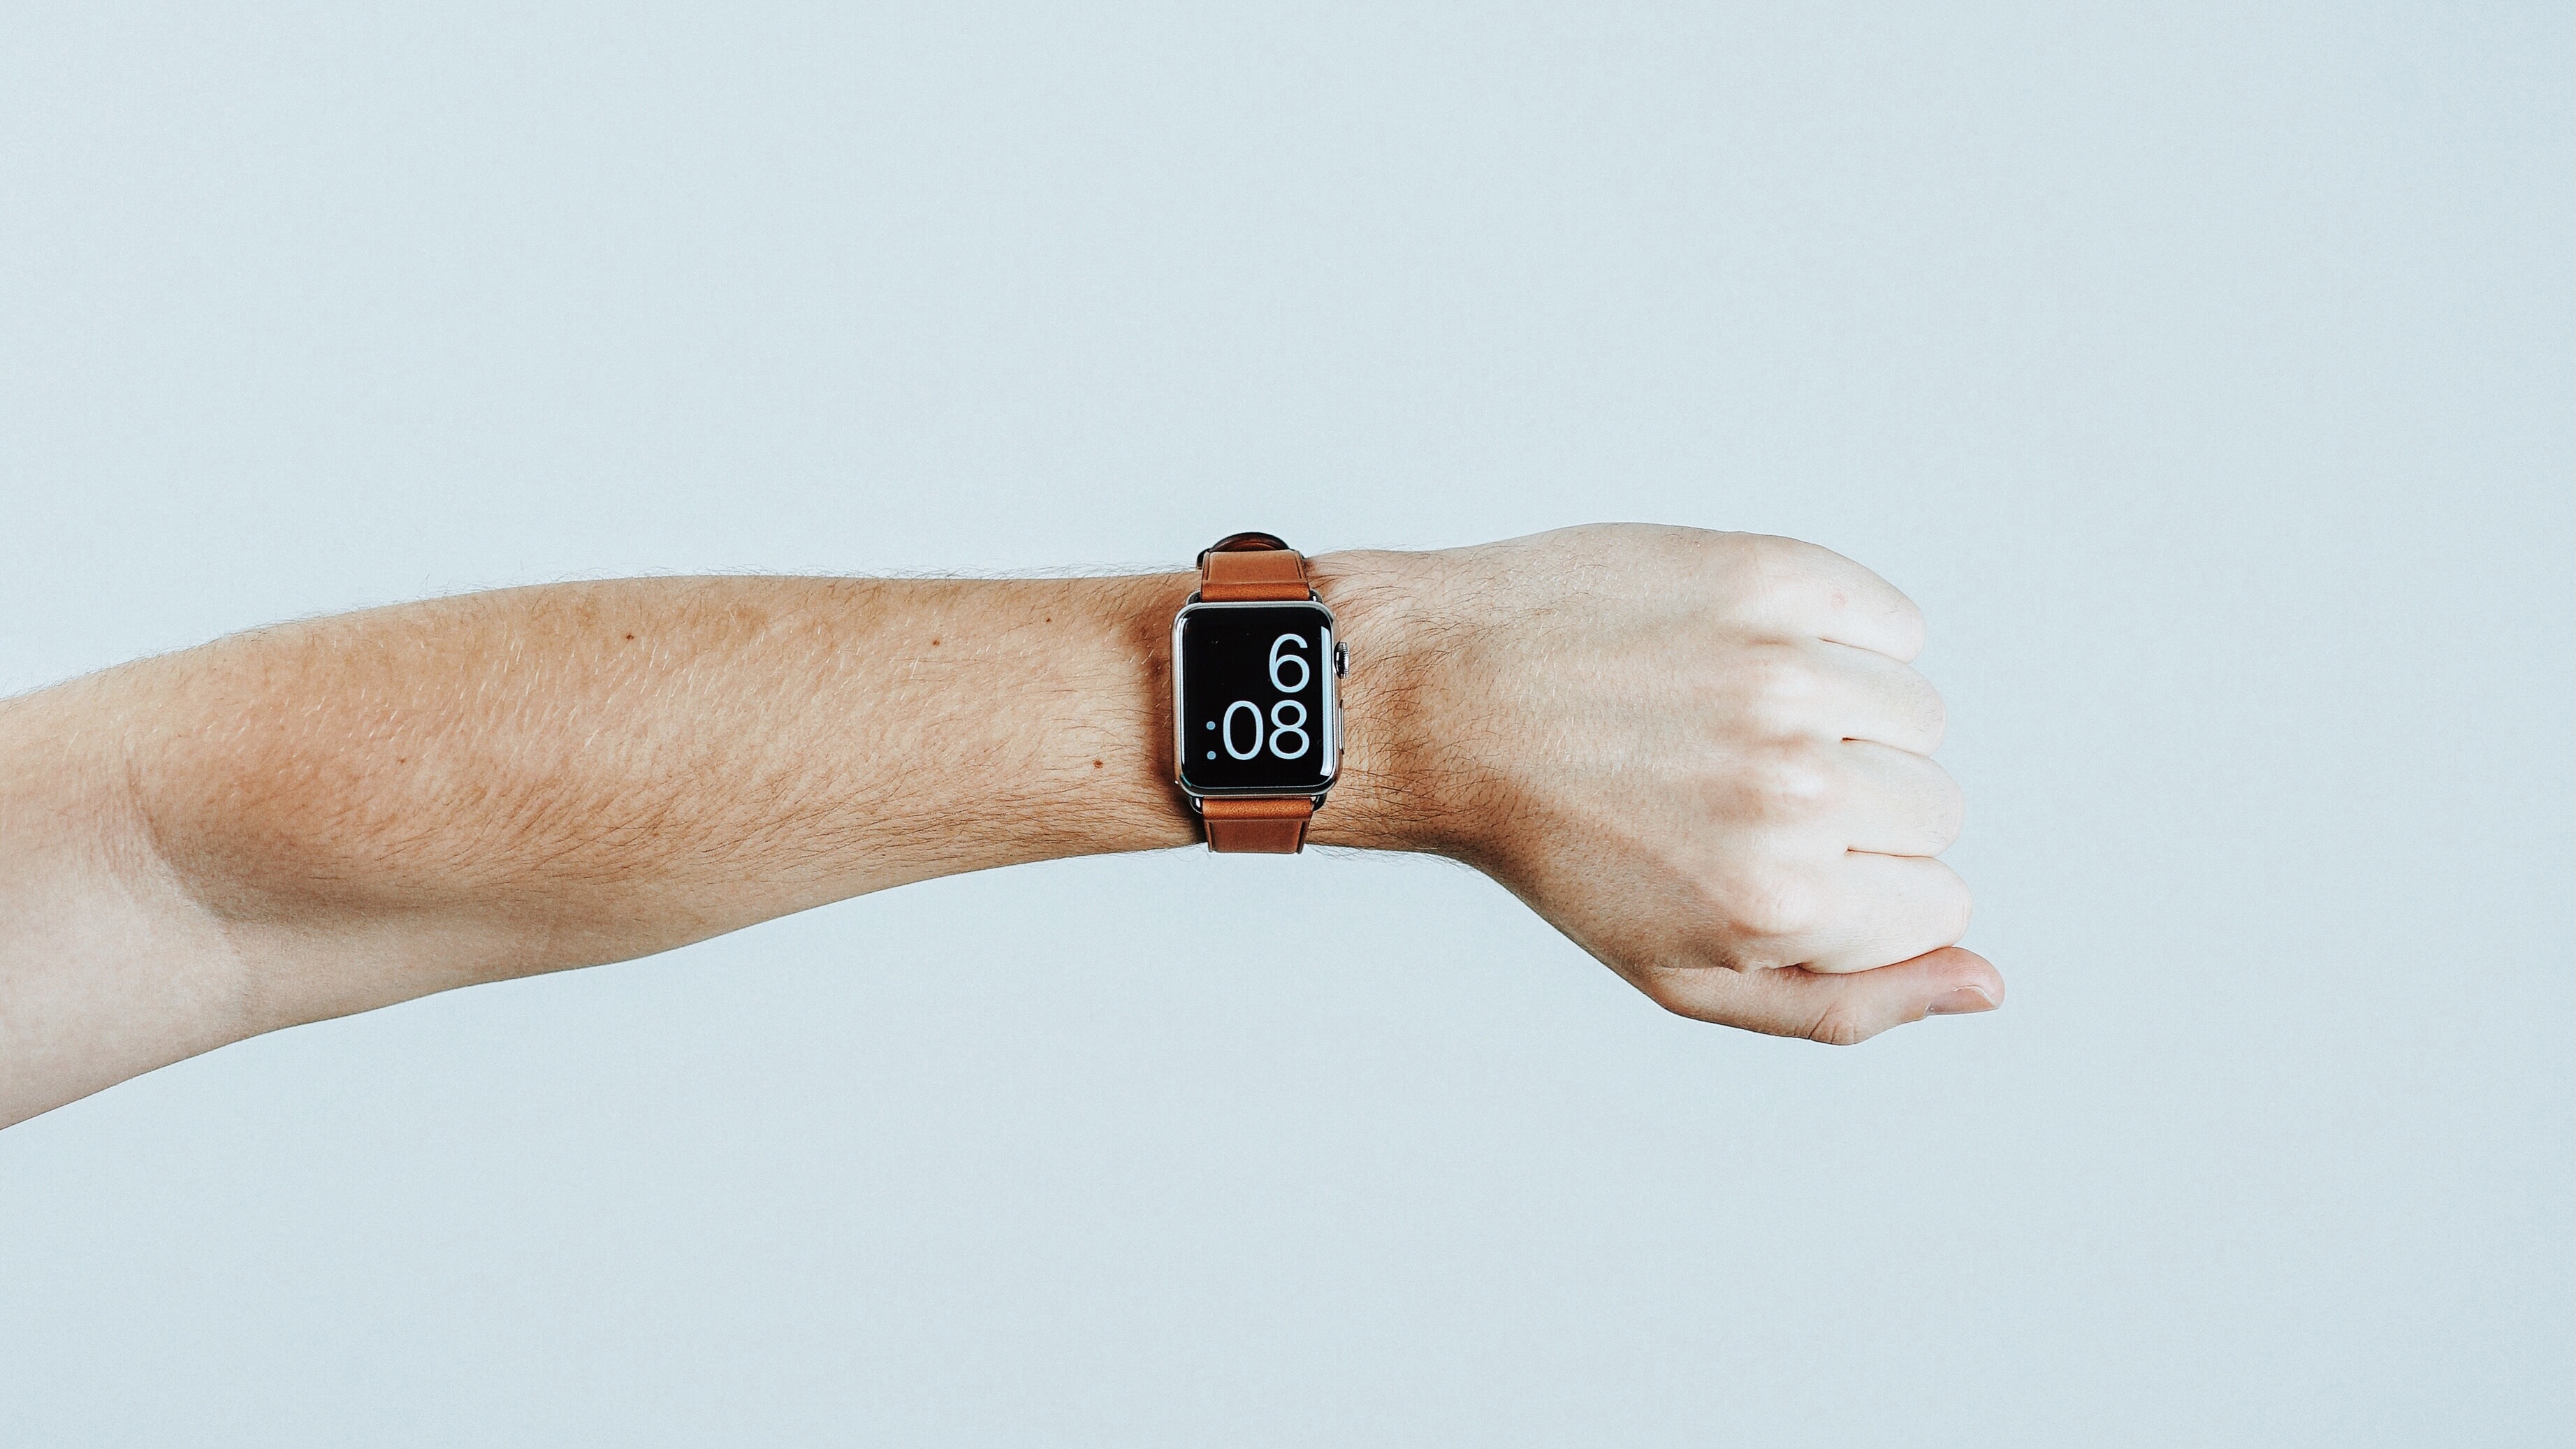 le bras de quelqu'un avec une montre connectée au poignet indiquant l'heure